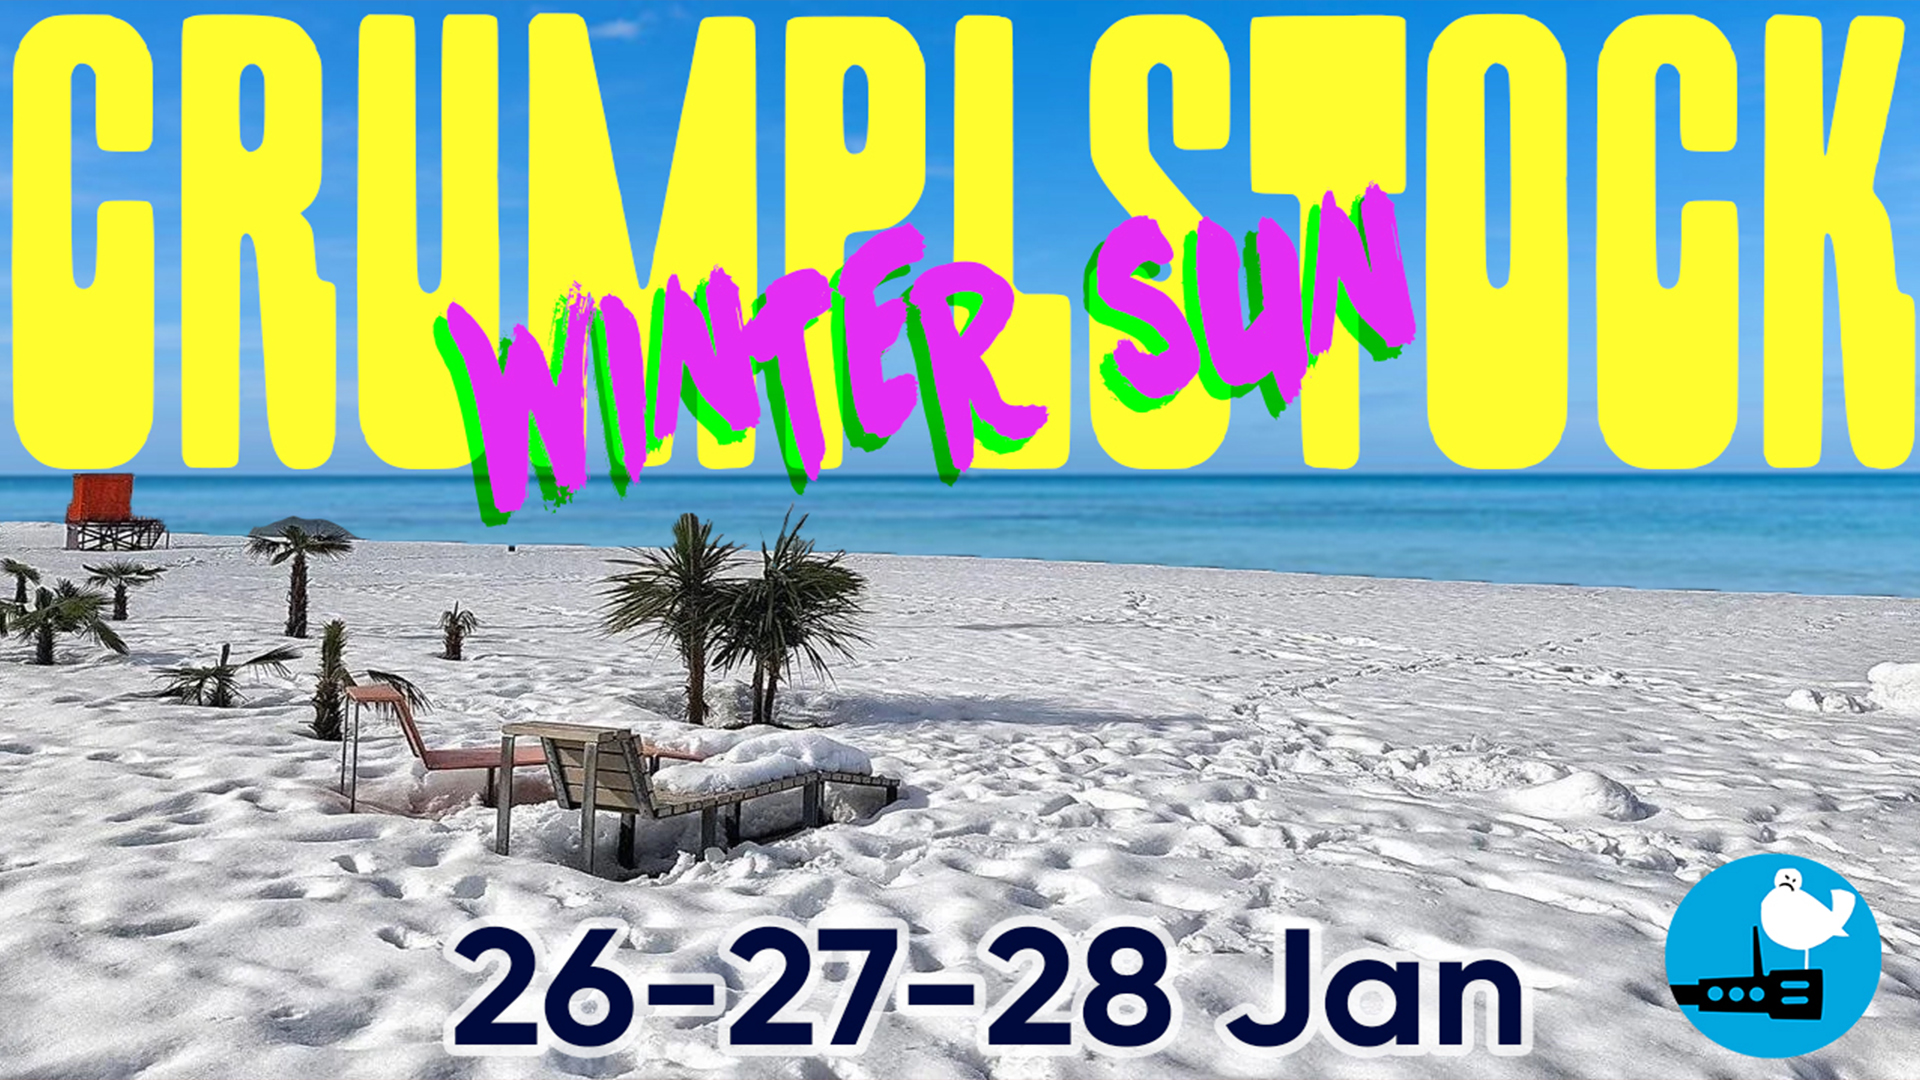 Crumplstock 12 – Fun In The Winter Sun!